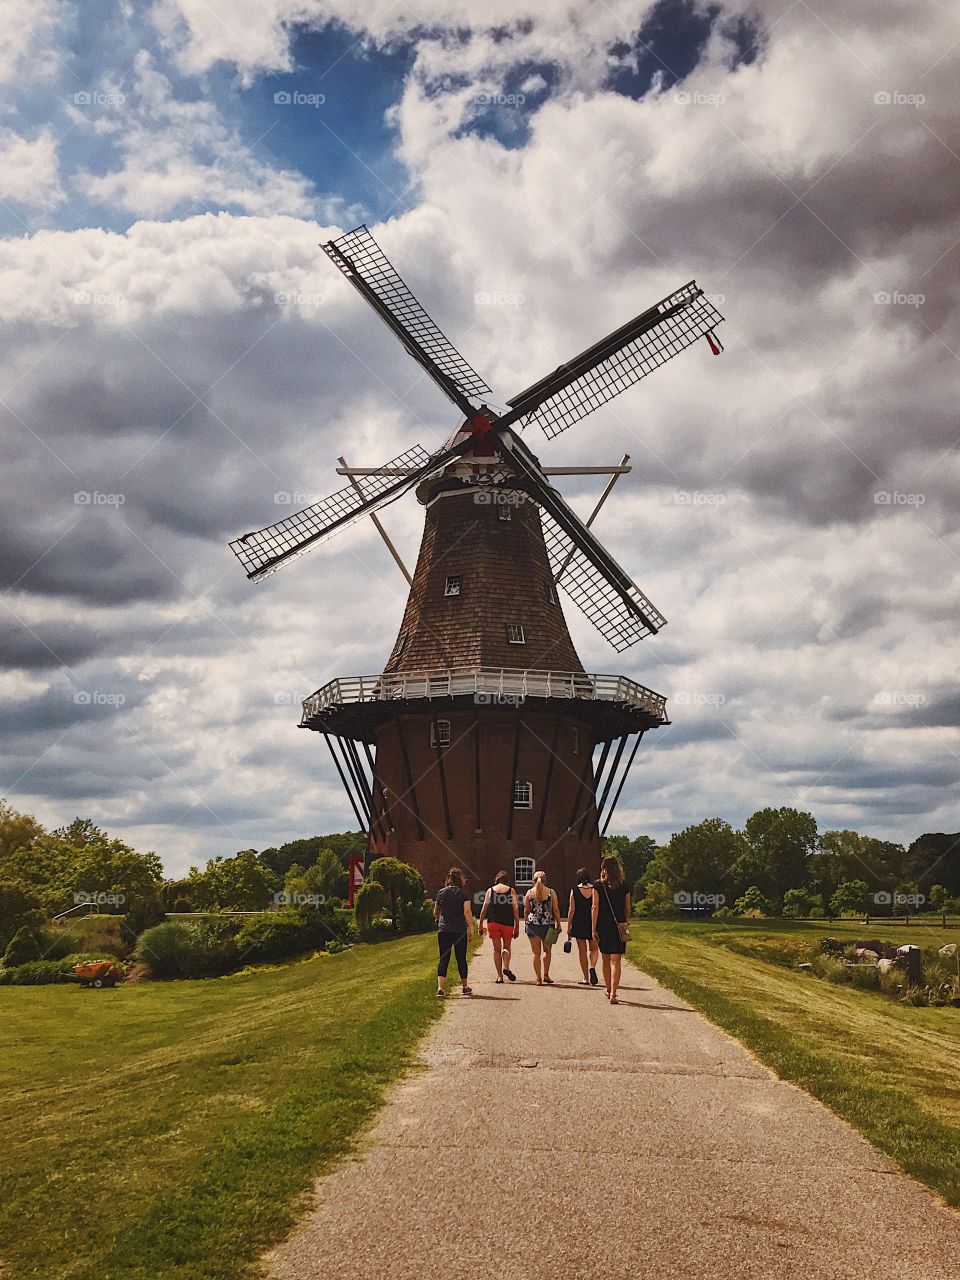 Original windmill, historic windmill in field, windmill in farm field, farm with large old windmill, farm with friends, friends at museum, girls trip